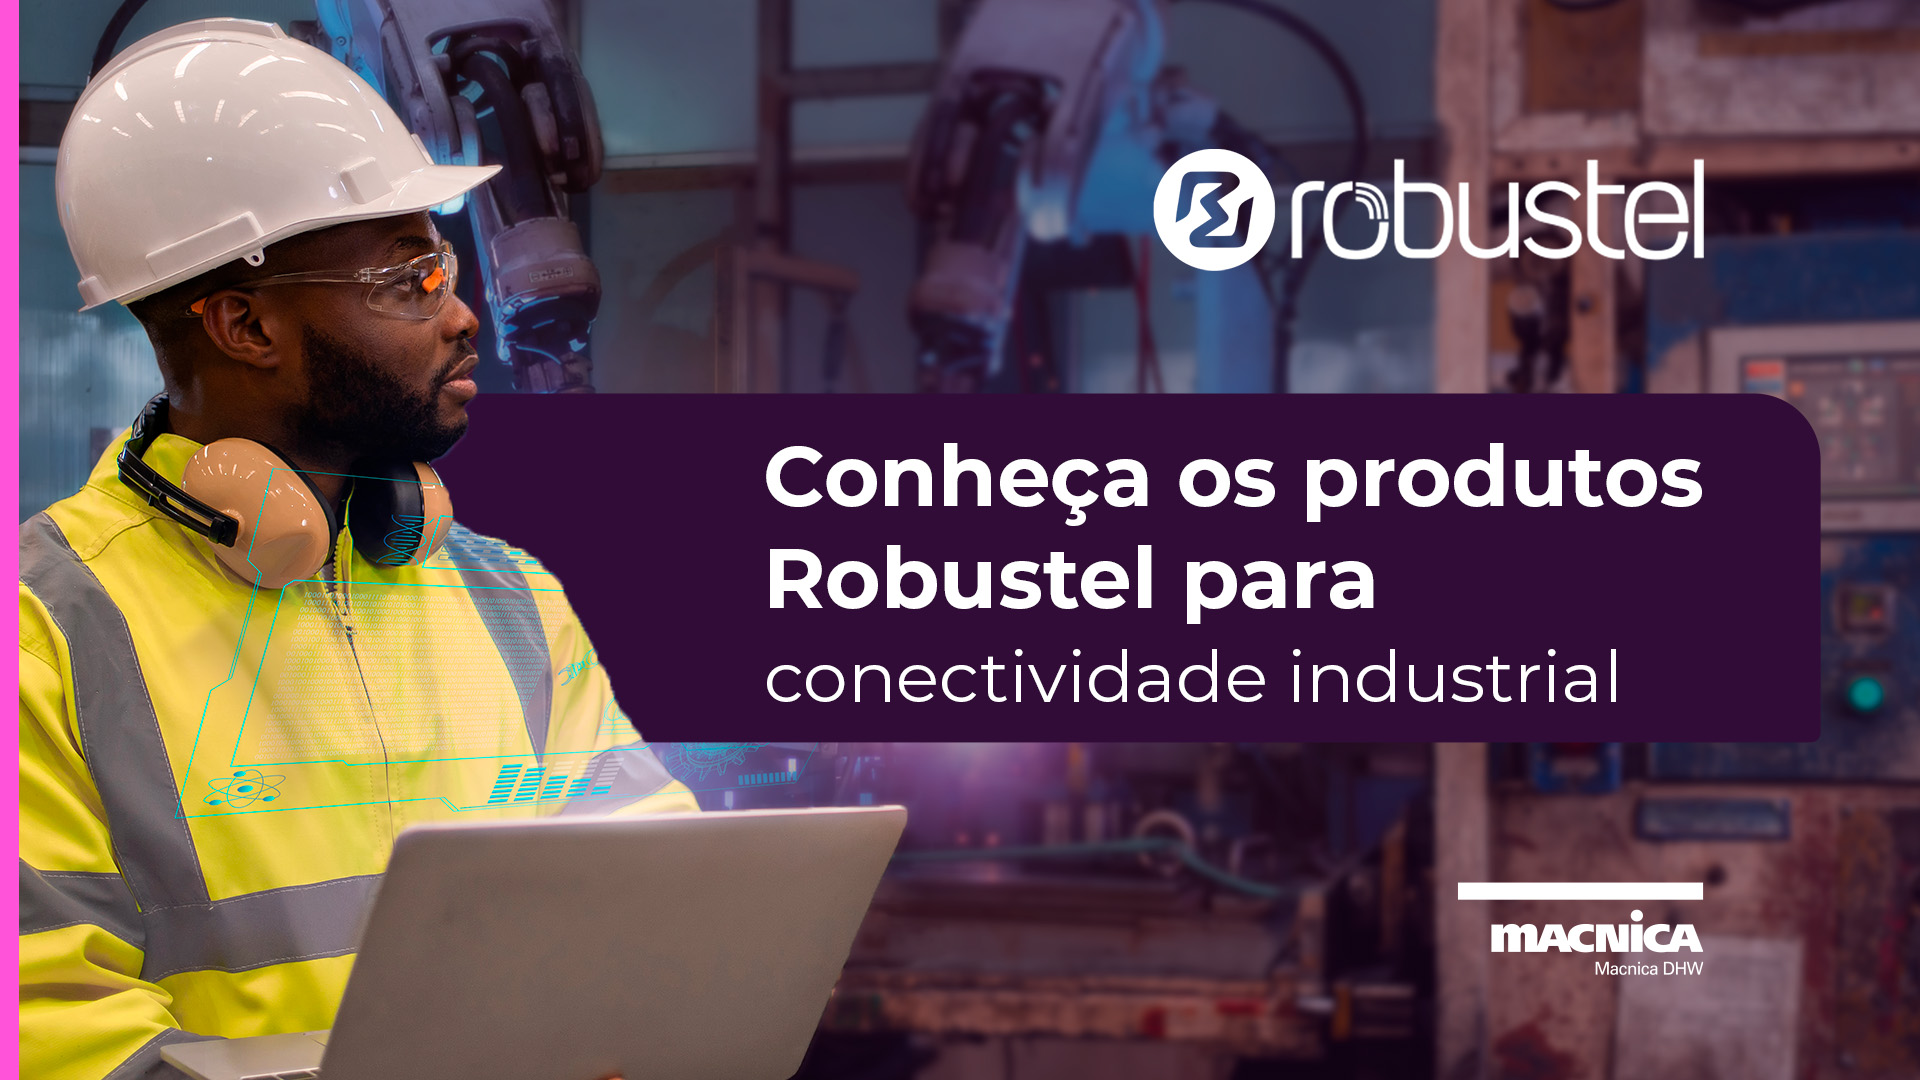 Conheça os produtos Robustel para conectividade industrial